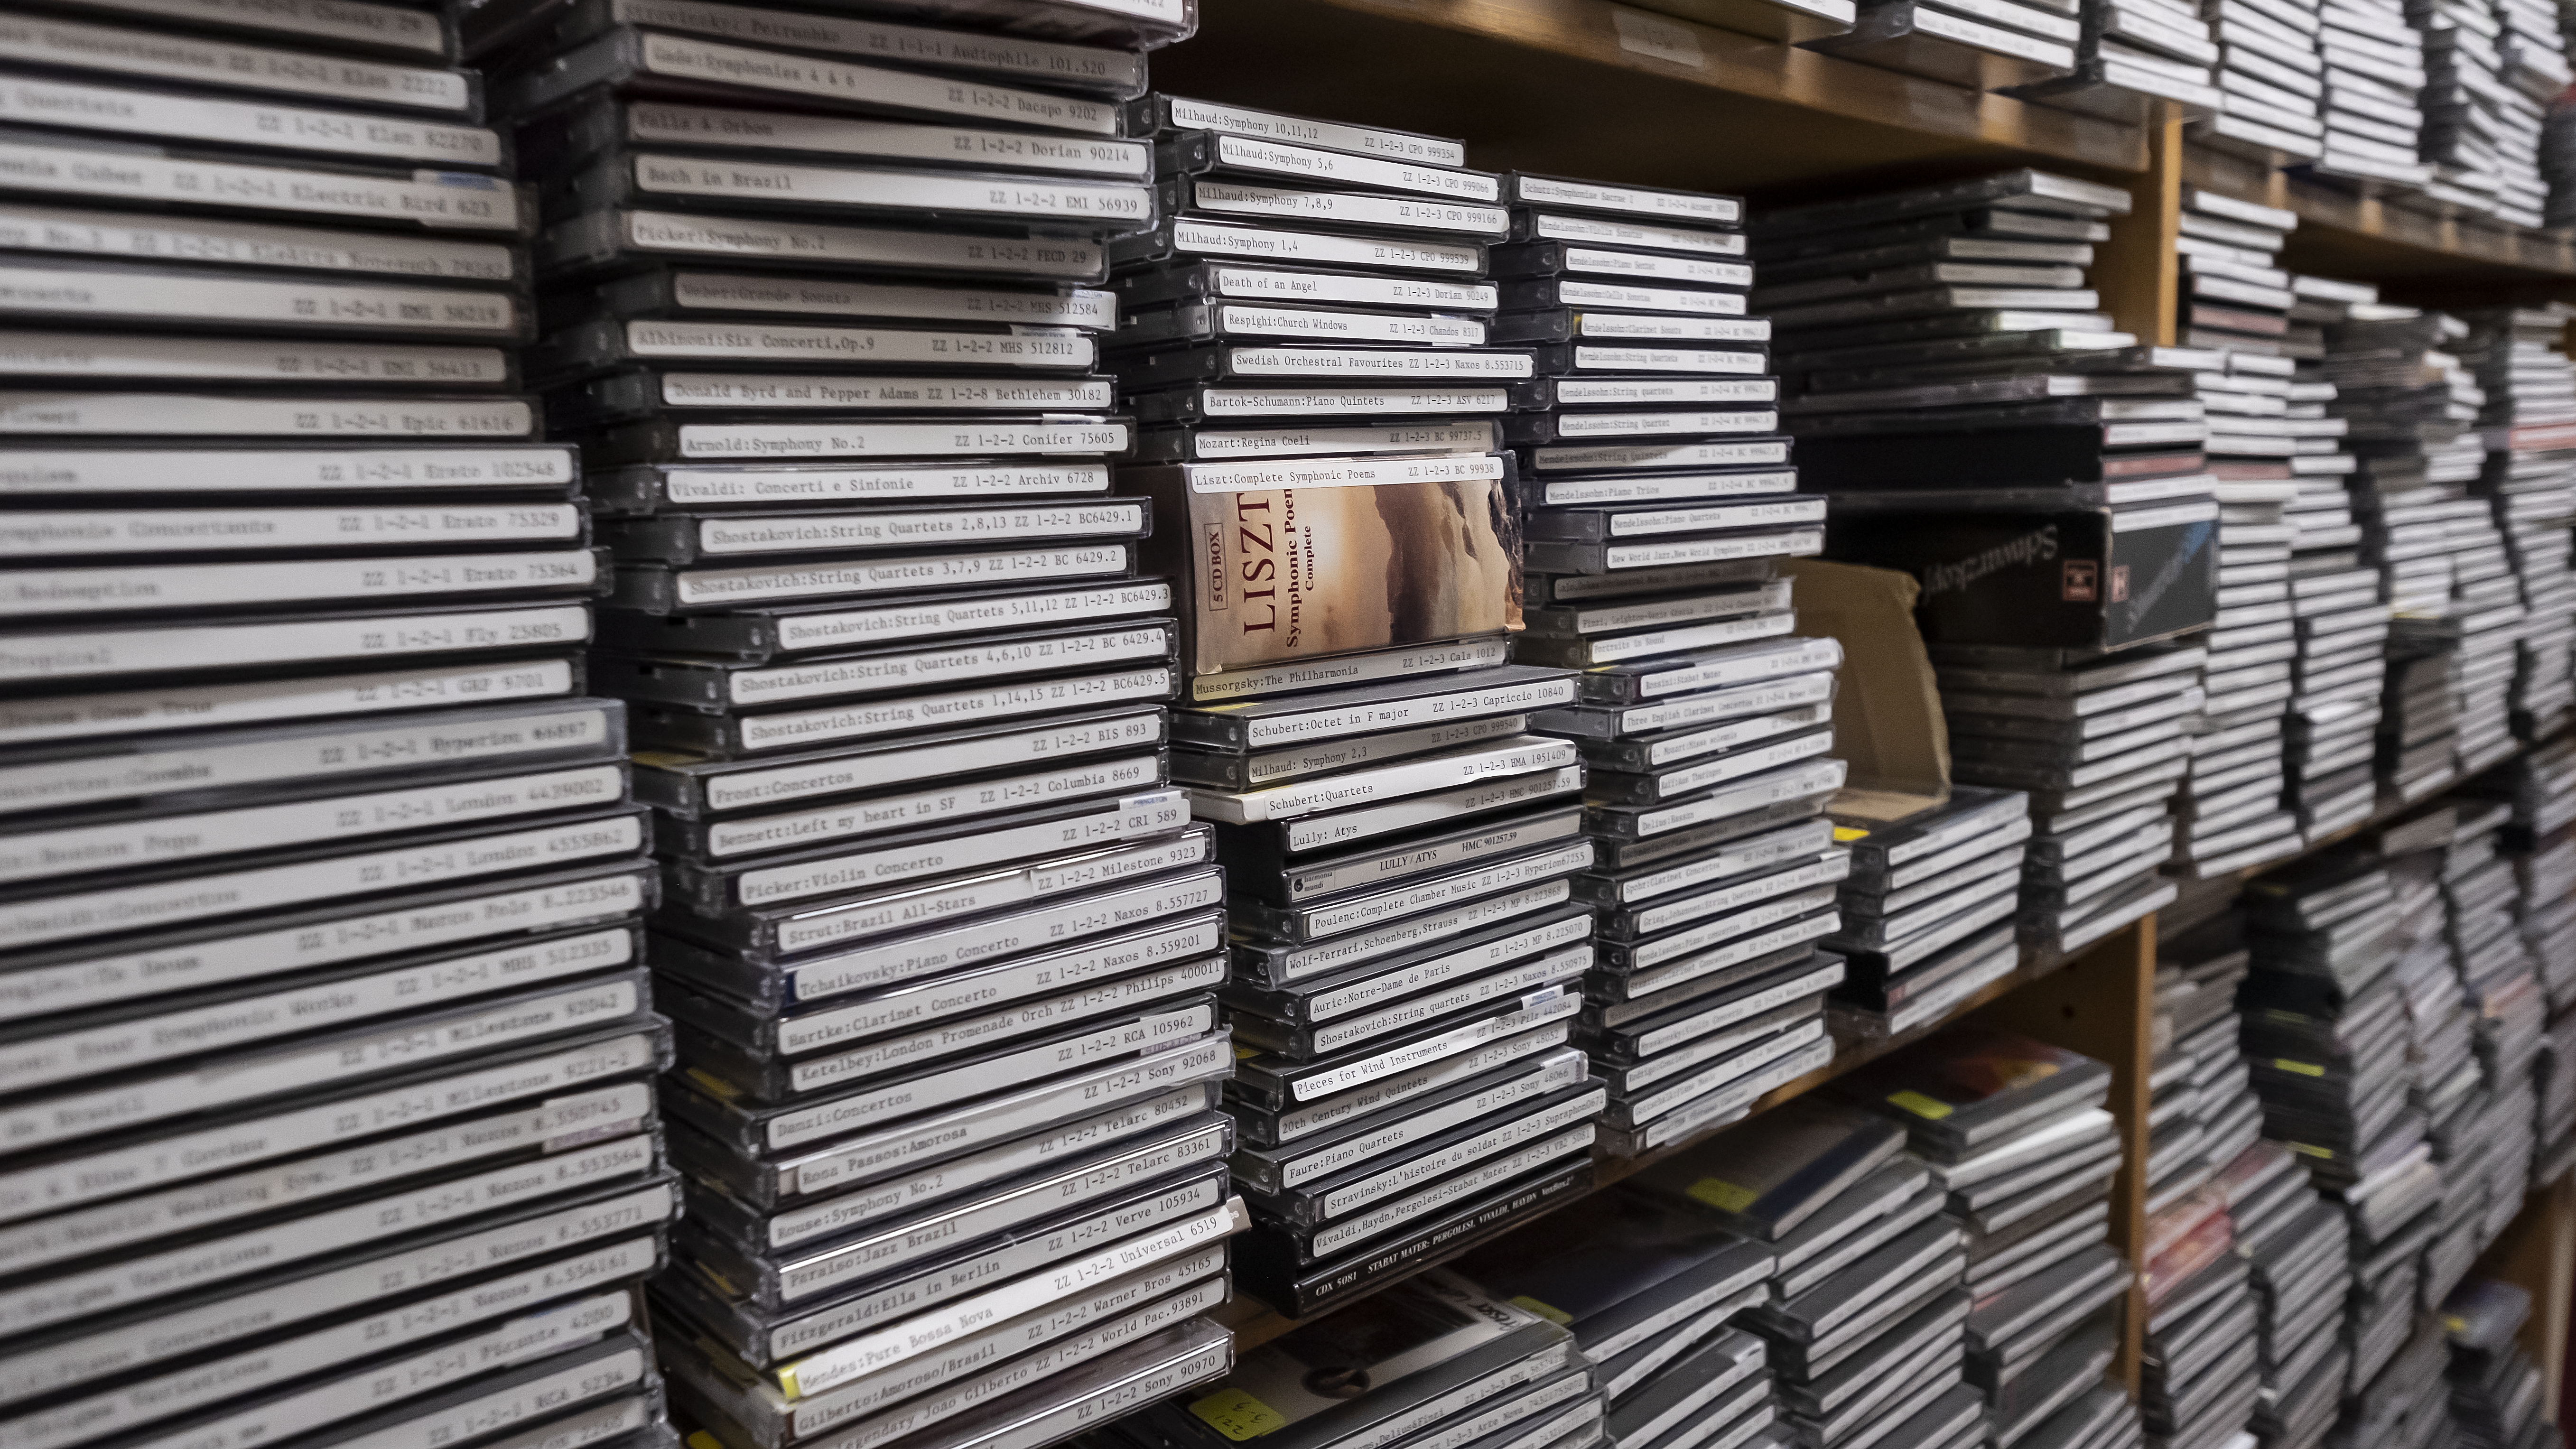 Stacks of CDs on shelves